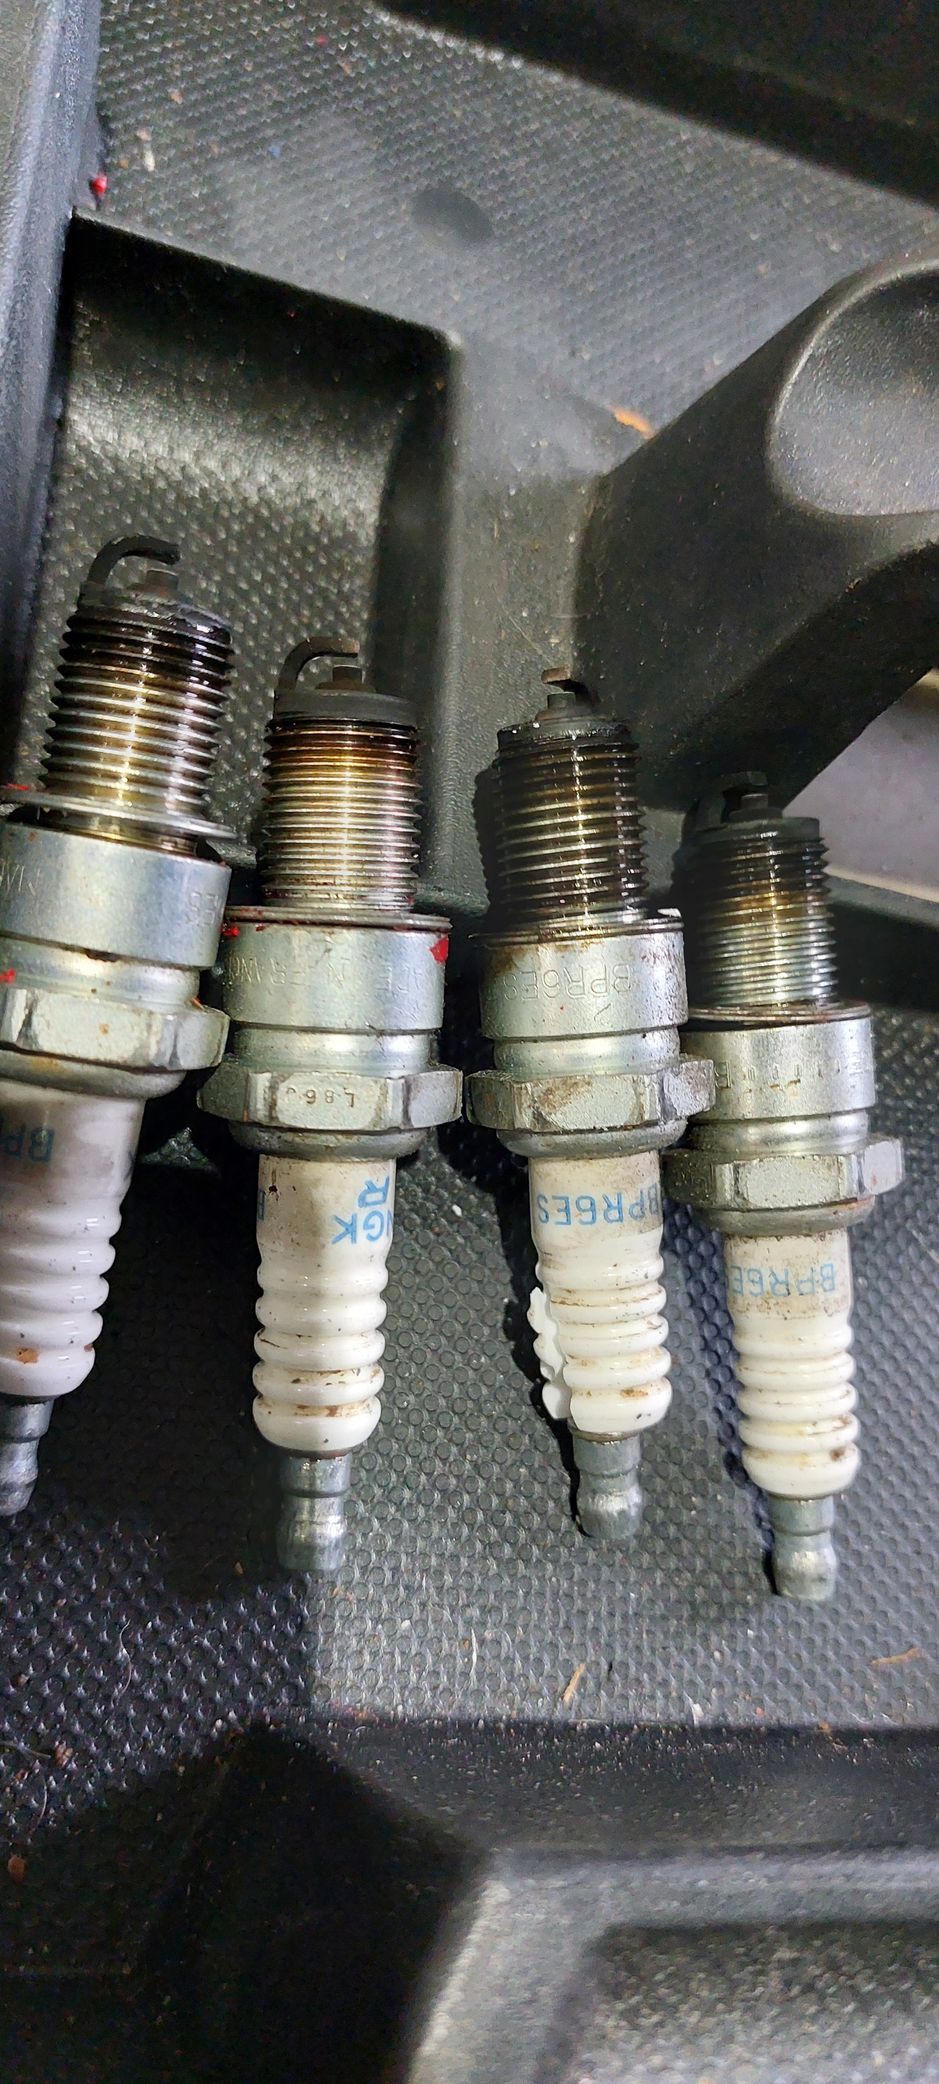 MG Metro Turbo wrong plugs, NGKBPR6ES